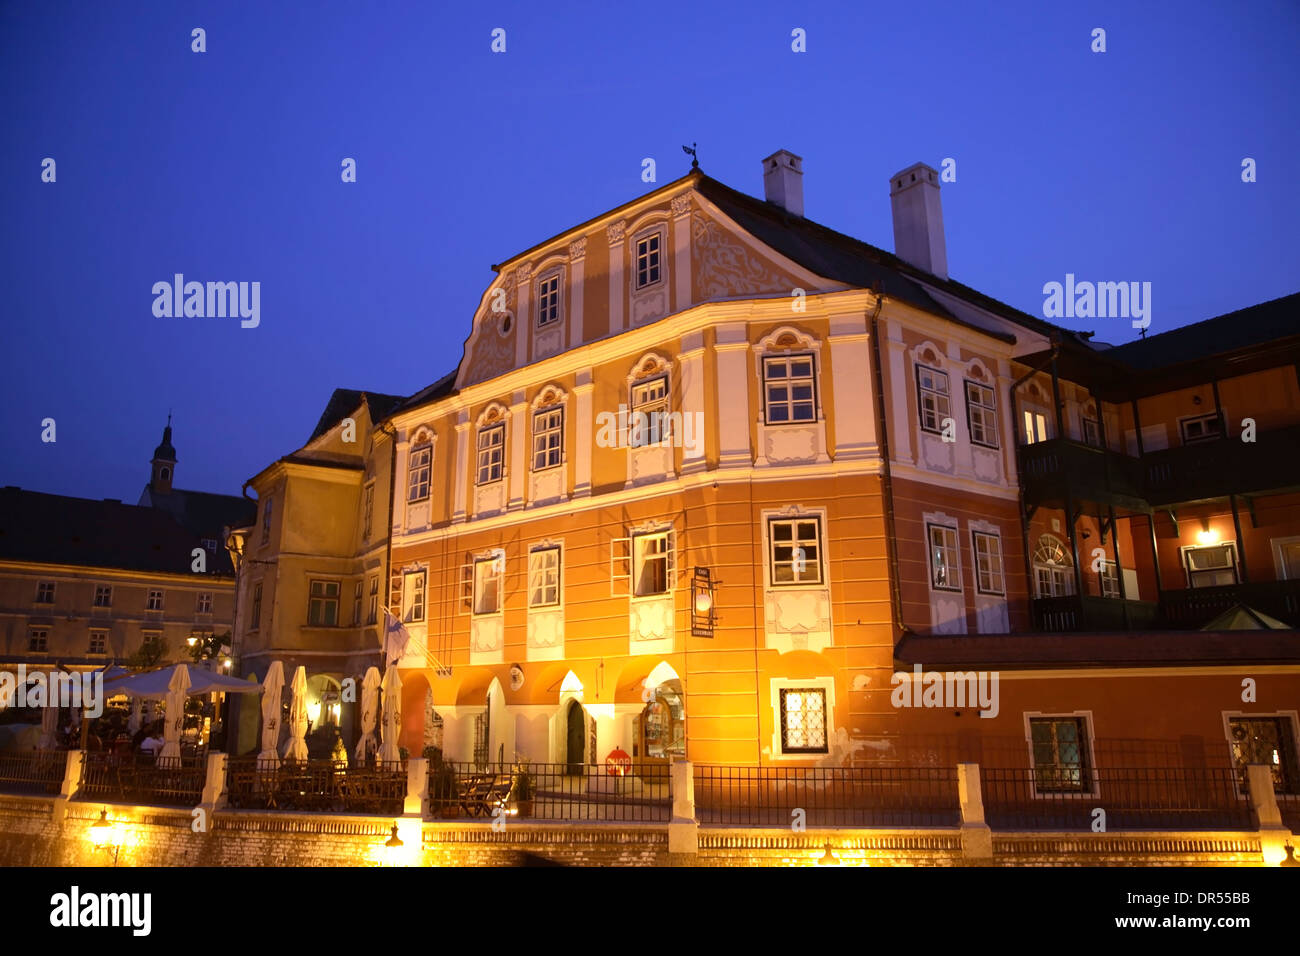 Luxembourg maison la nuit, Piata Mica, Sibiu (Hermannstadt), Transylvanie, Roumanie, Europe Banque D'Images